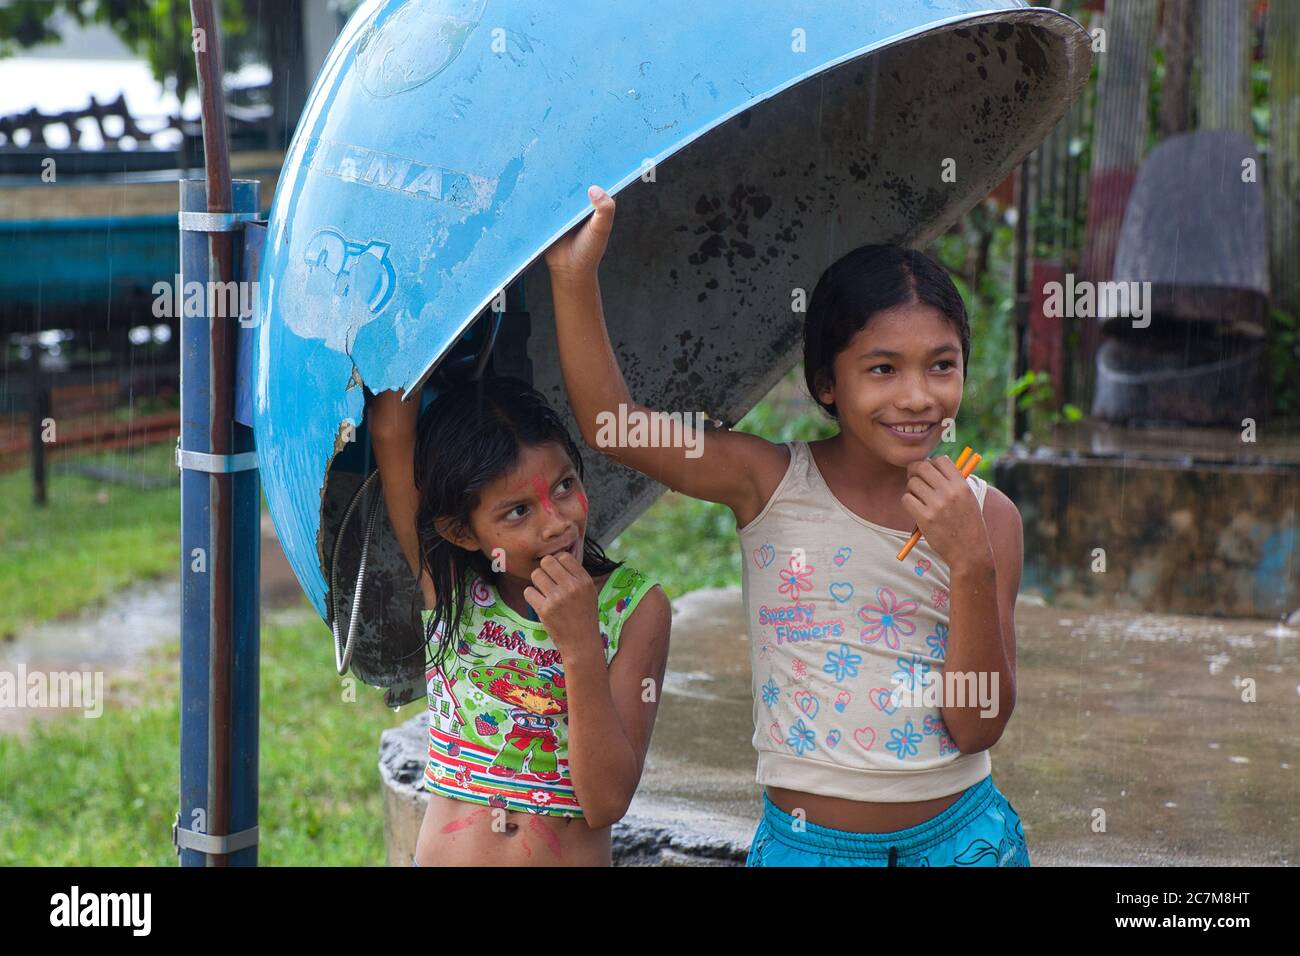 Zwei hübsche kleine Mädchen finden in der Stadt Curua Una, im brasilianischen Bundesstaat para, Schutz unter einem Telefonkioskdach vor einer Regendusche. Stockfoto